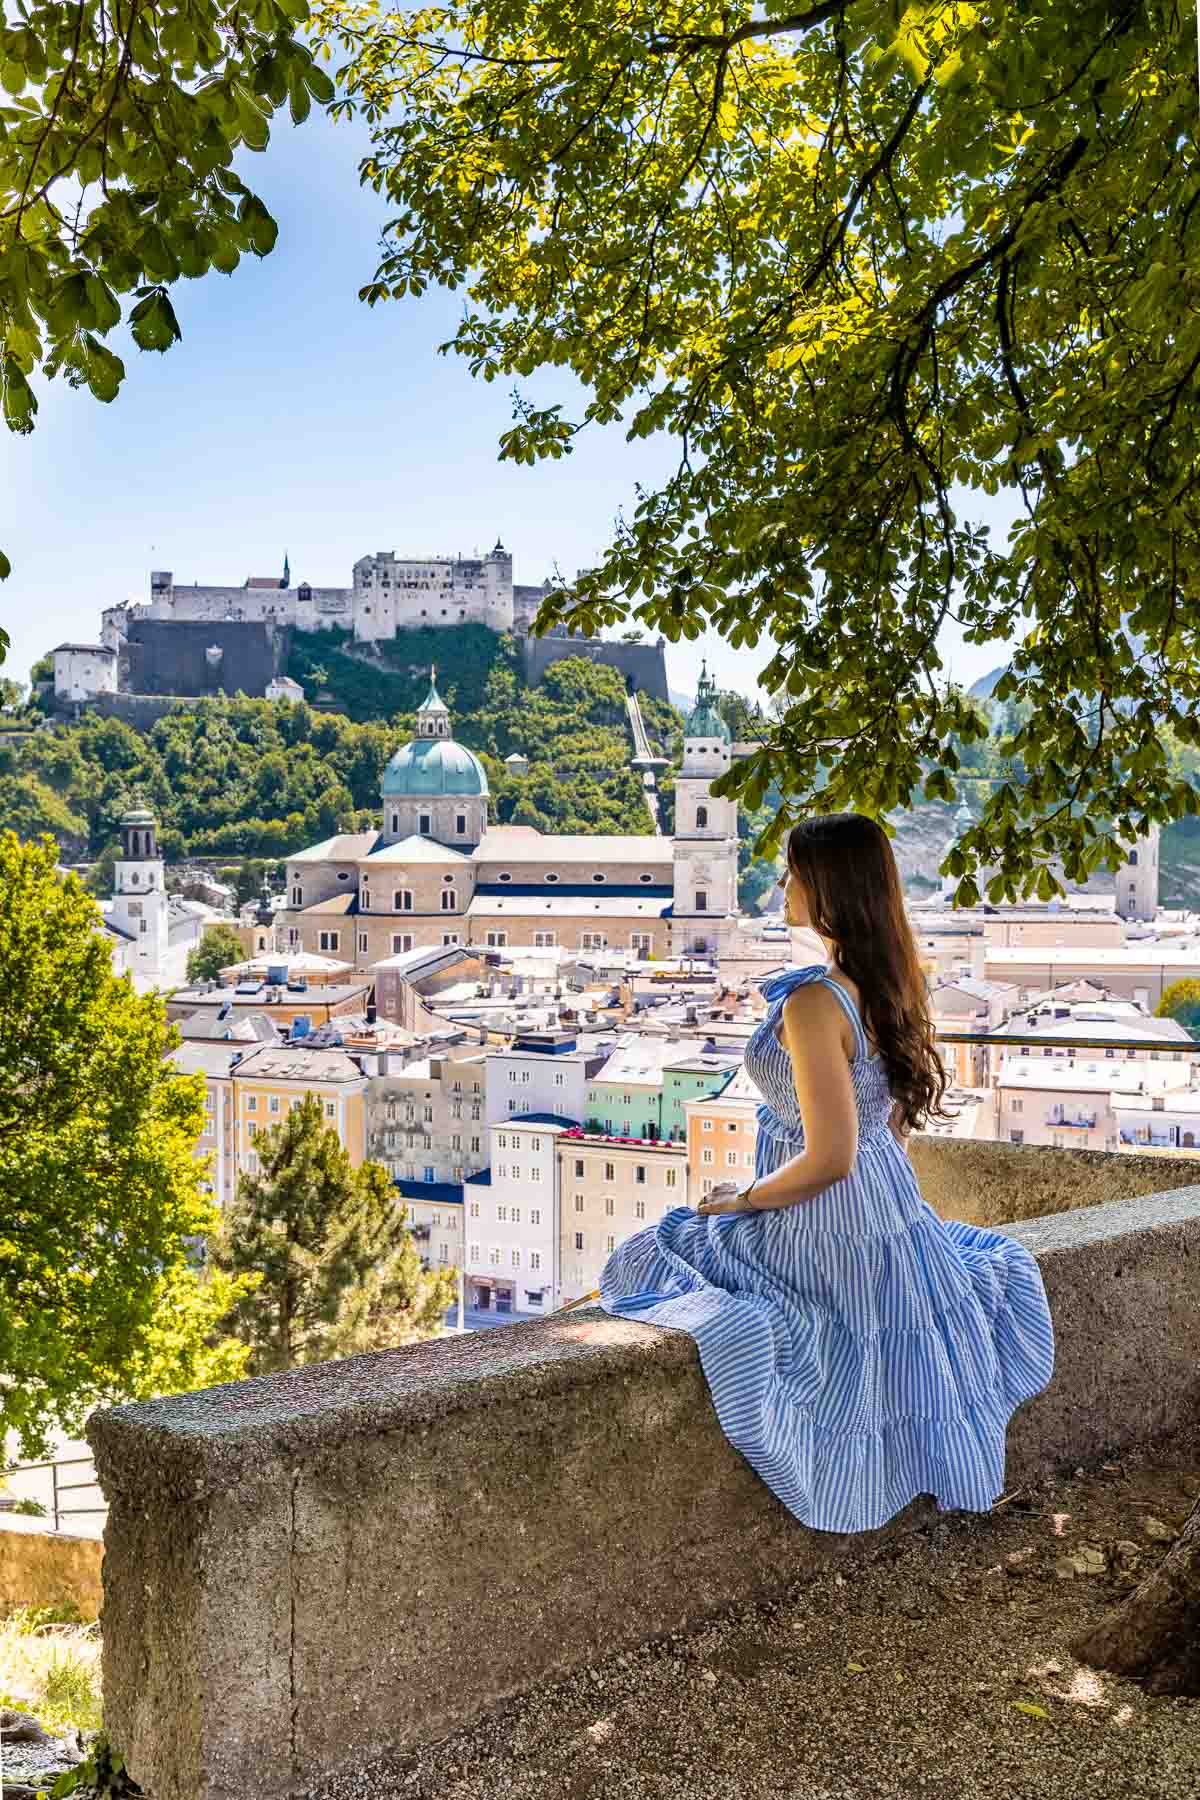 Panoramautsikt Over Salzburg fra kapuzinerkloster utsiktspunkt med jente i en blå kjole